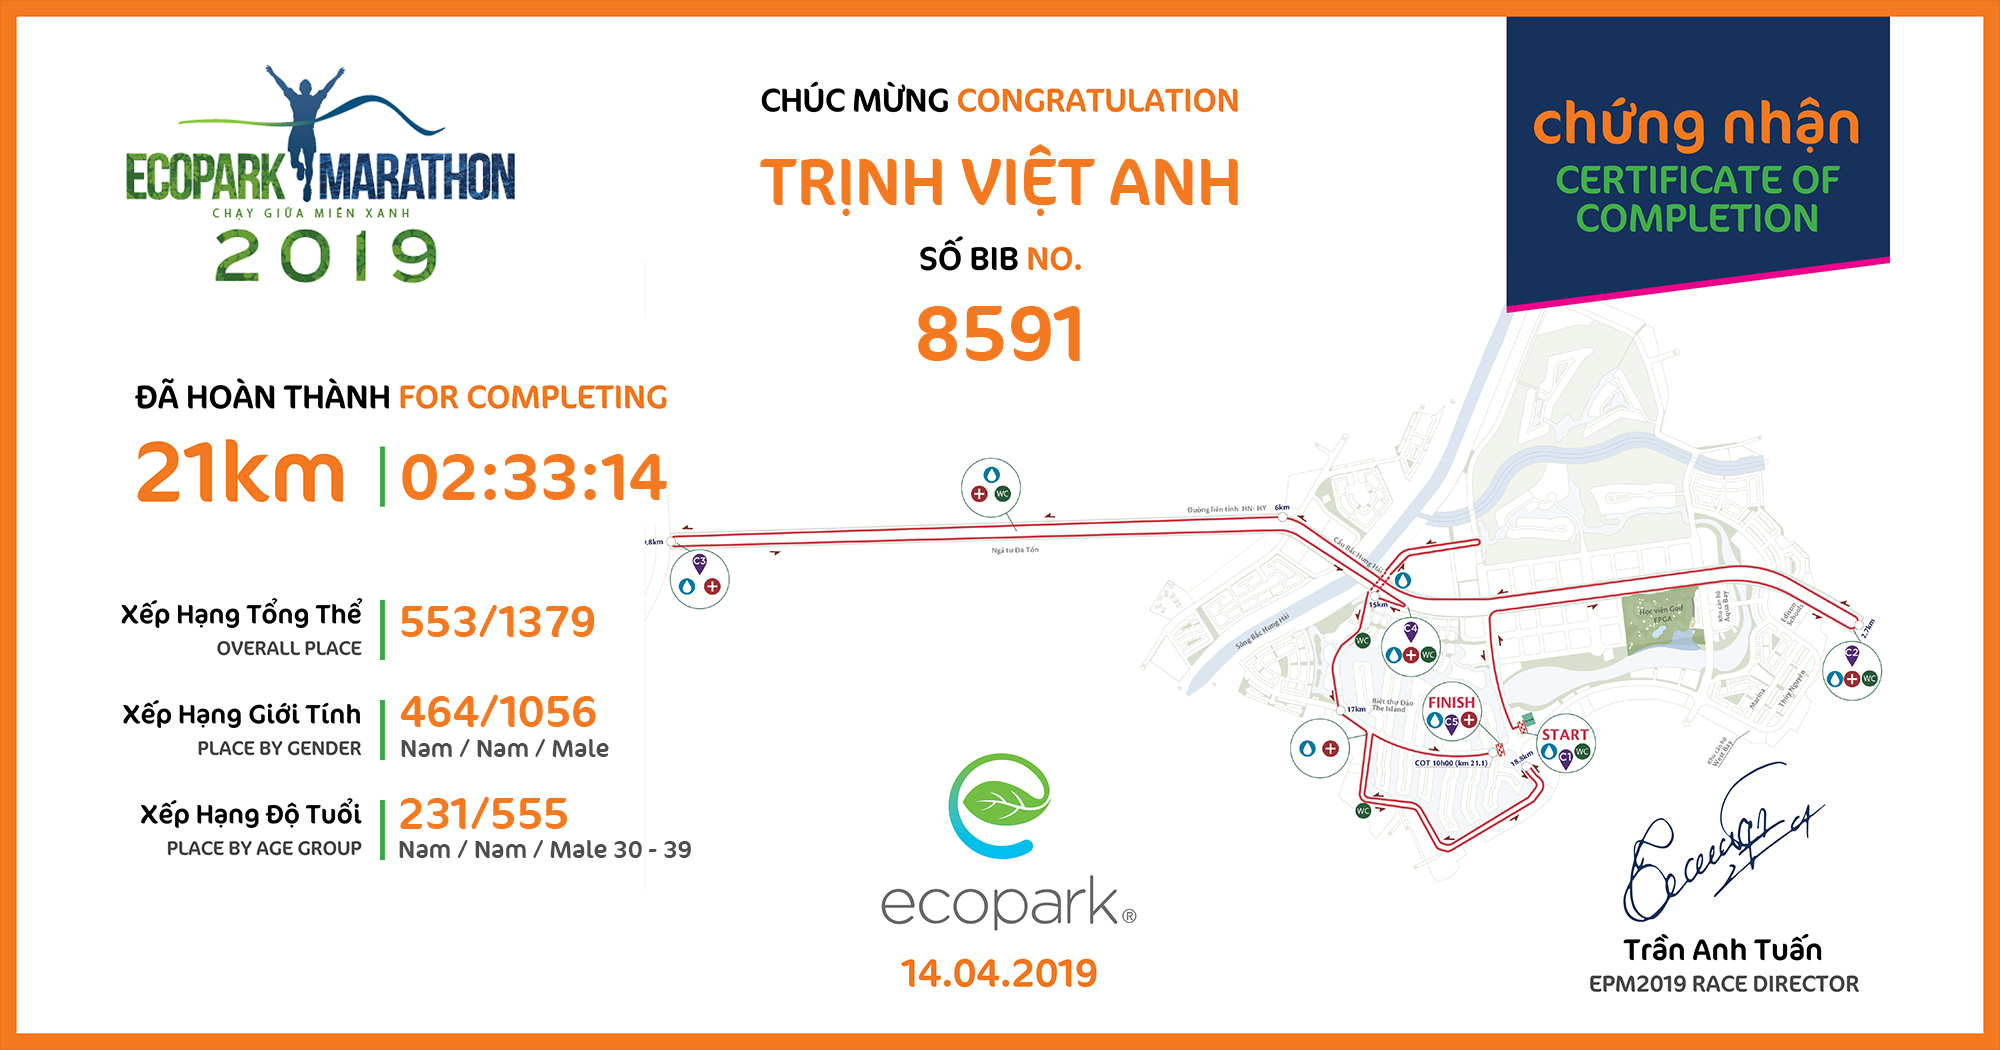 8591 - Trịnh Việt Anh